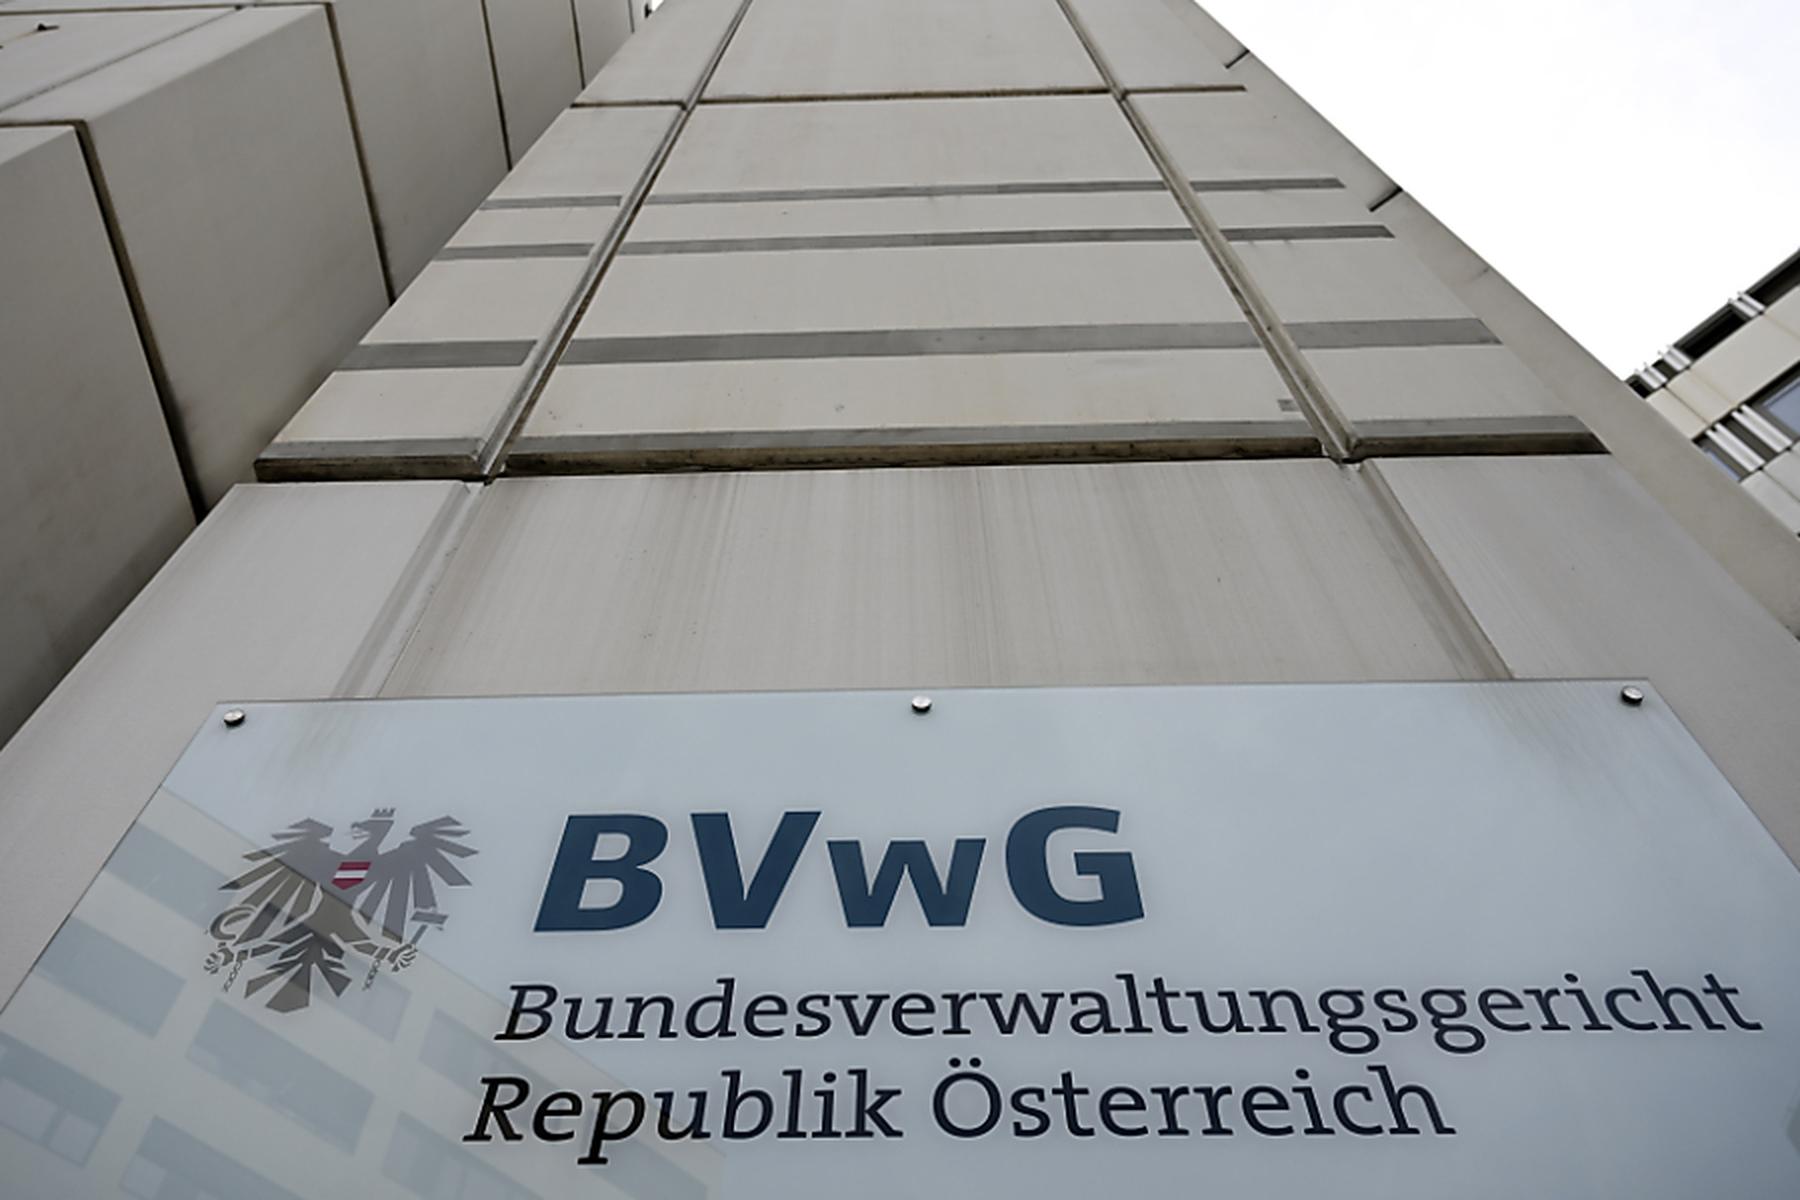 Zadić für Änderungen bei Bestellung des BVwG-Präsidenten